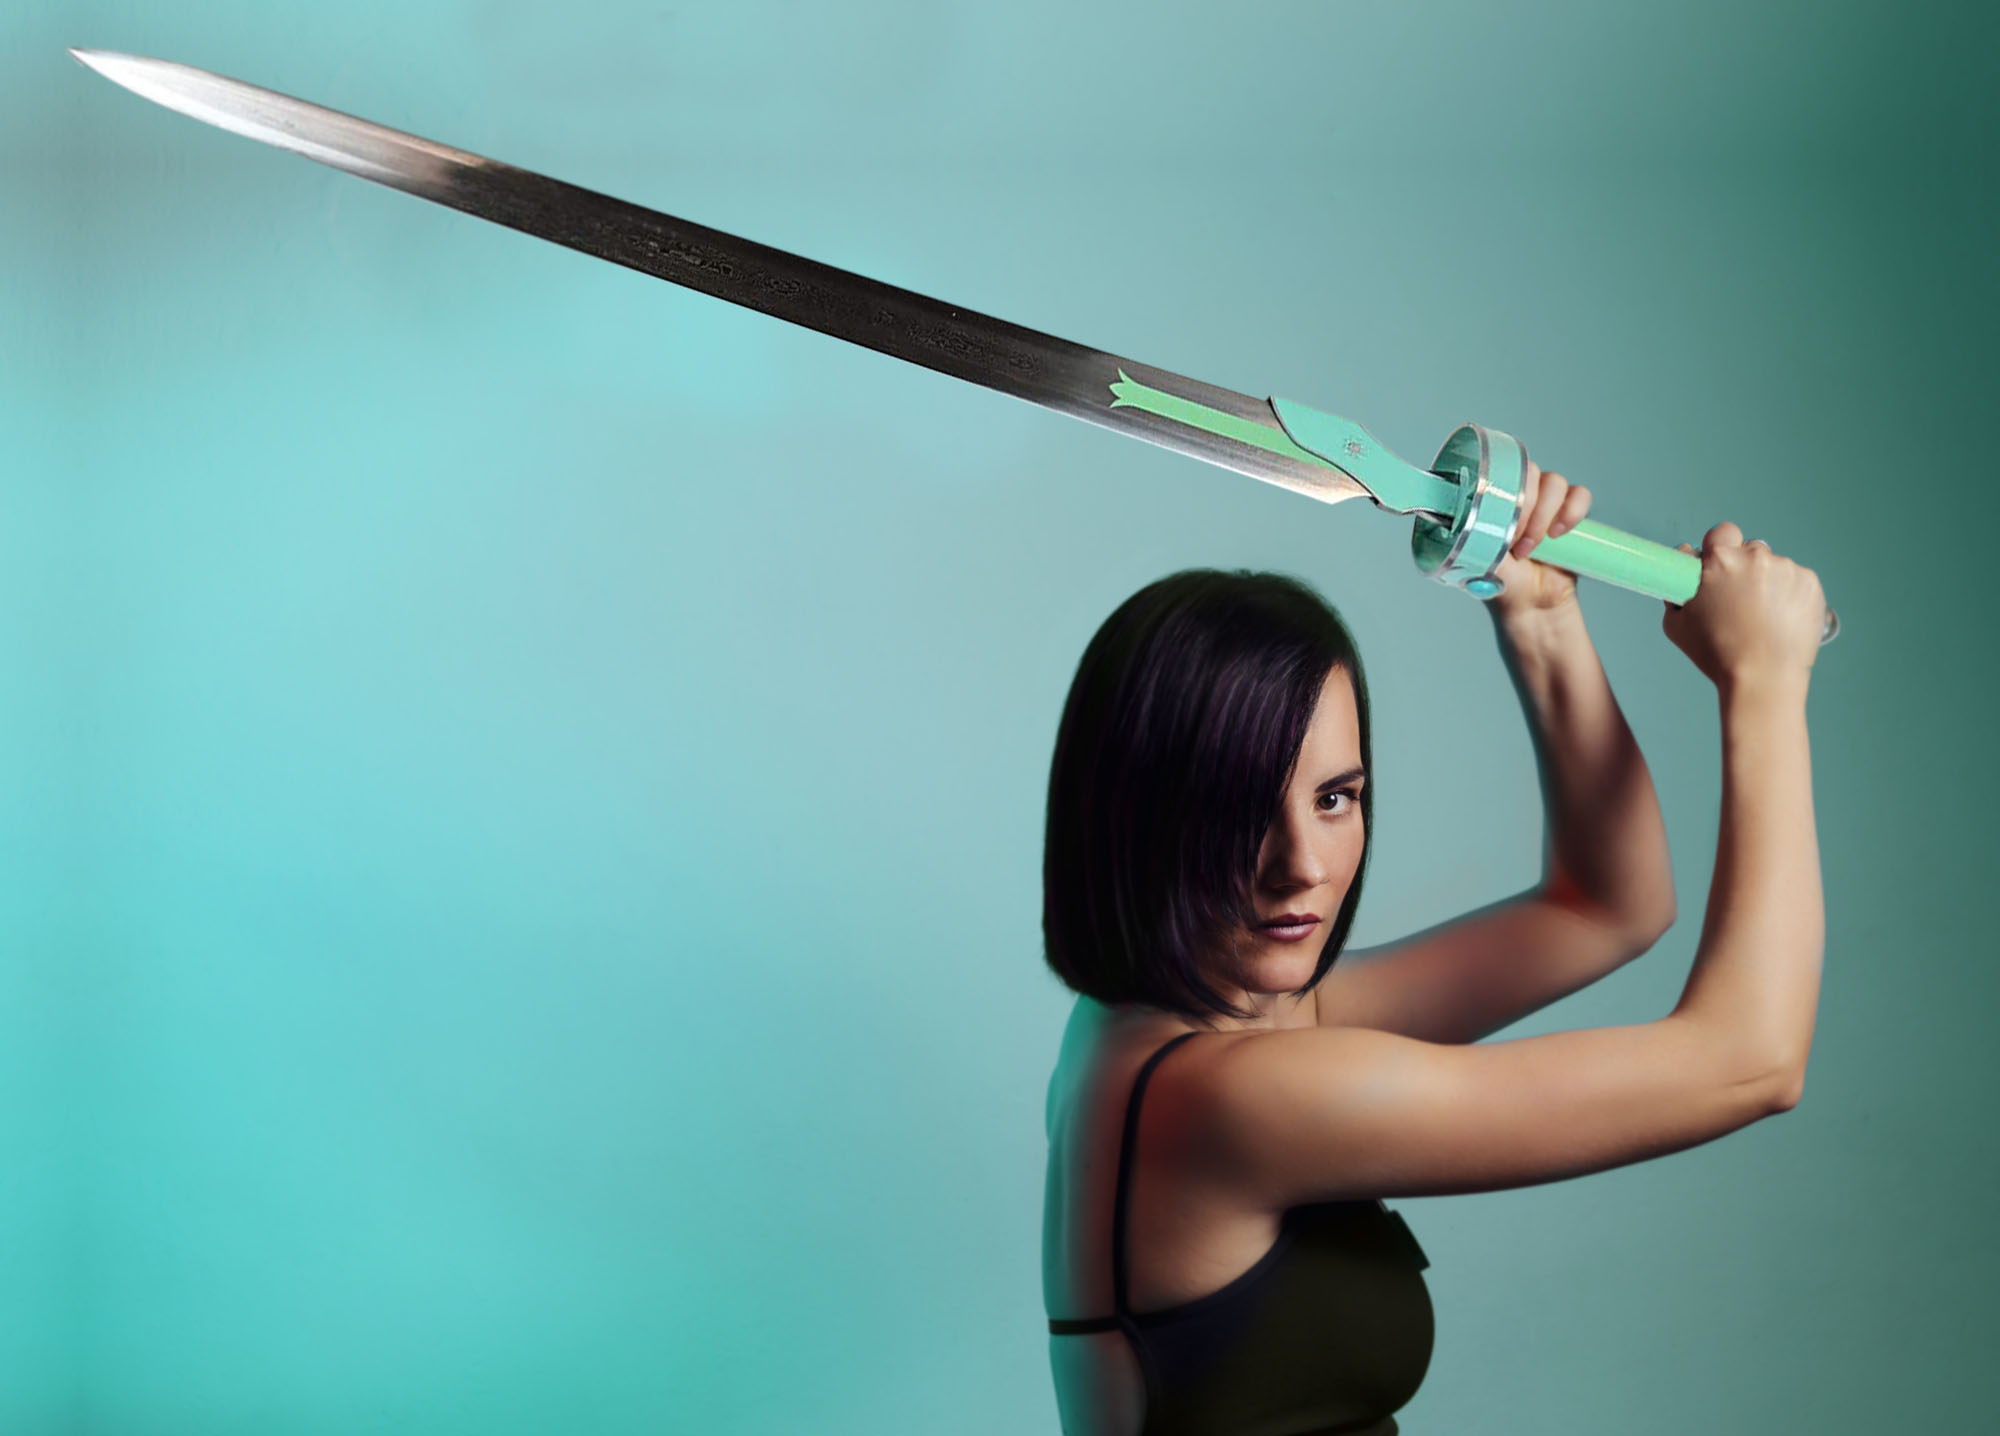 Asuna Flashing Light Schwert Sword Art Online - handgeschmiedet & gefaltet, Set